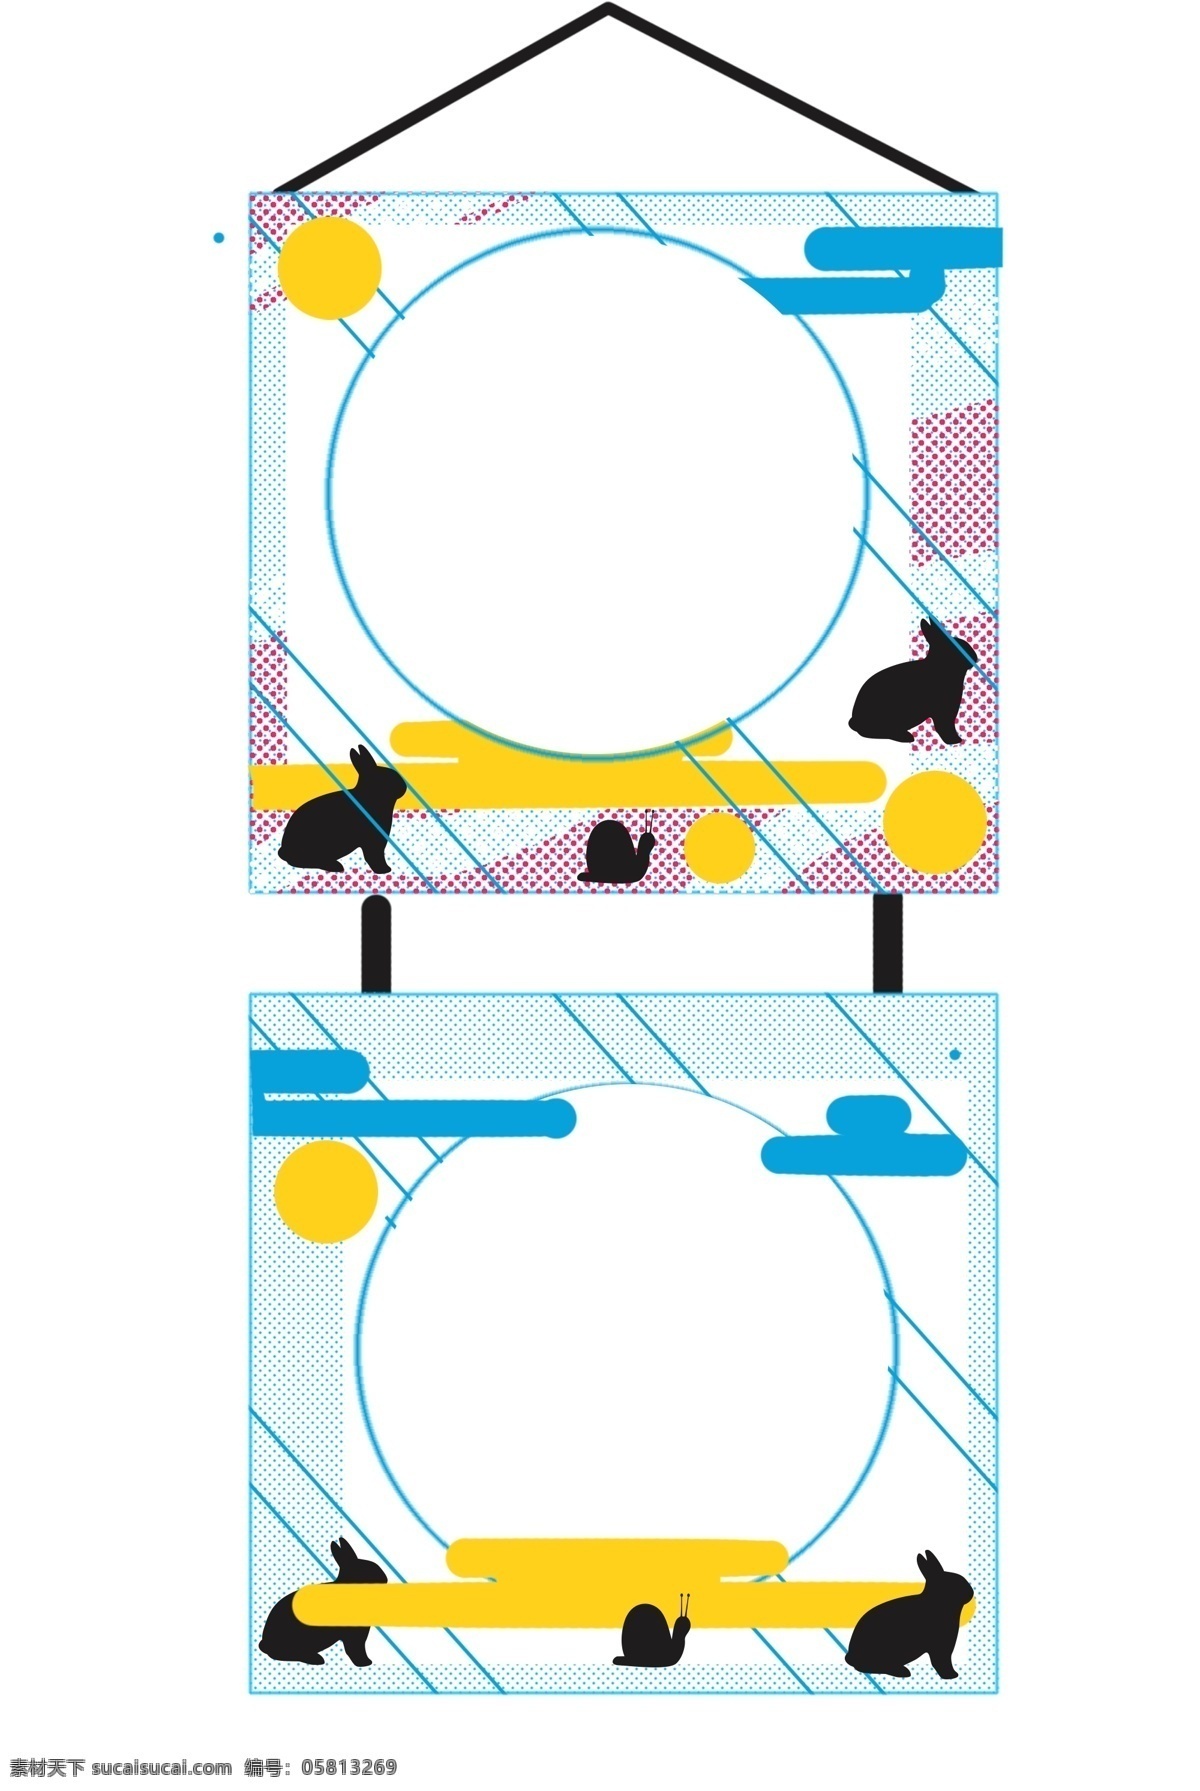 两个 相框 挂饰 插画 两个相框 正方形相框 相框挂饰 卡通相框 黑色 小 动物 装饰 装饰品 卡通插画